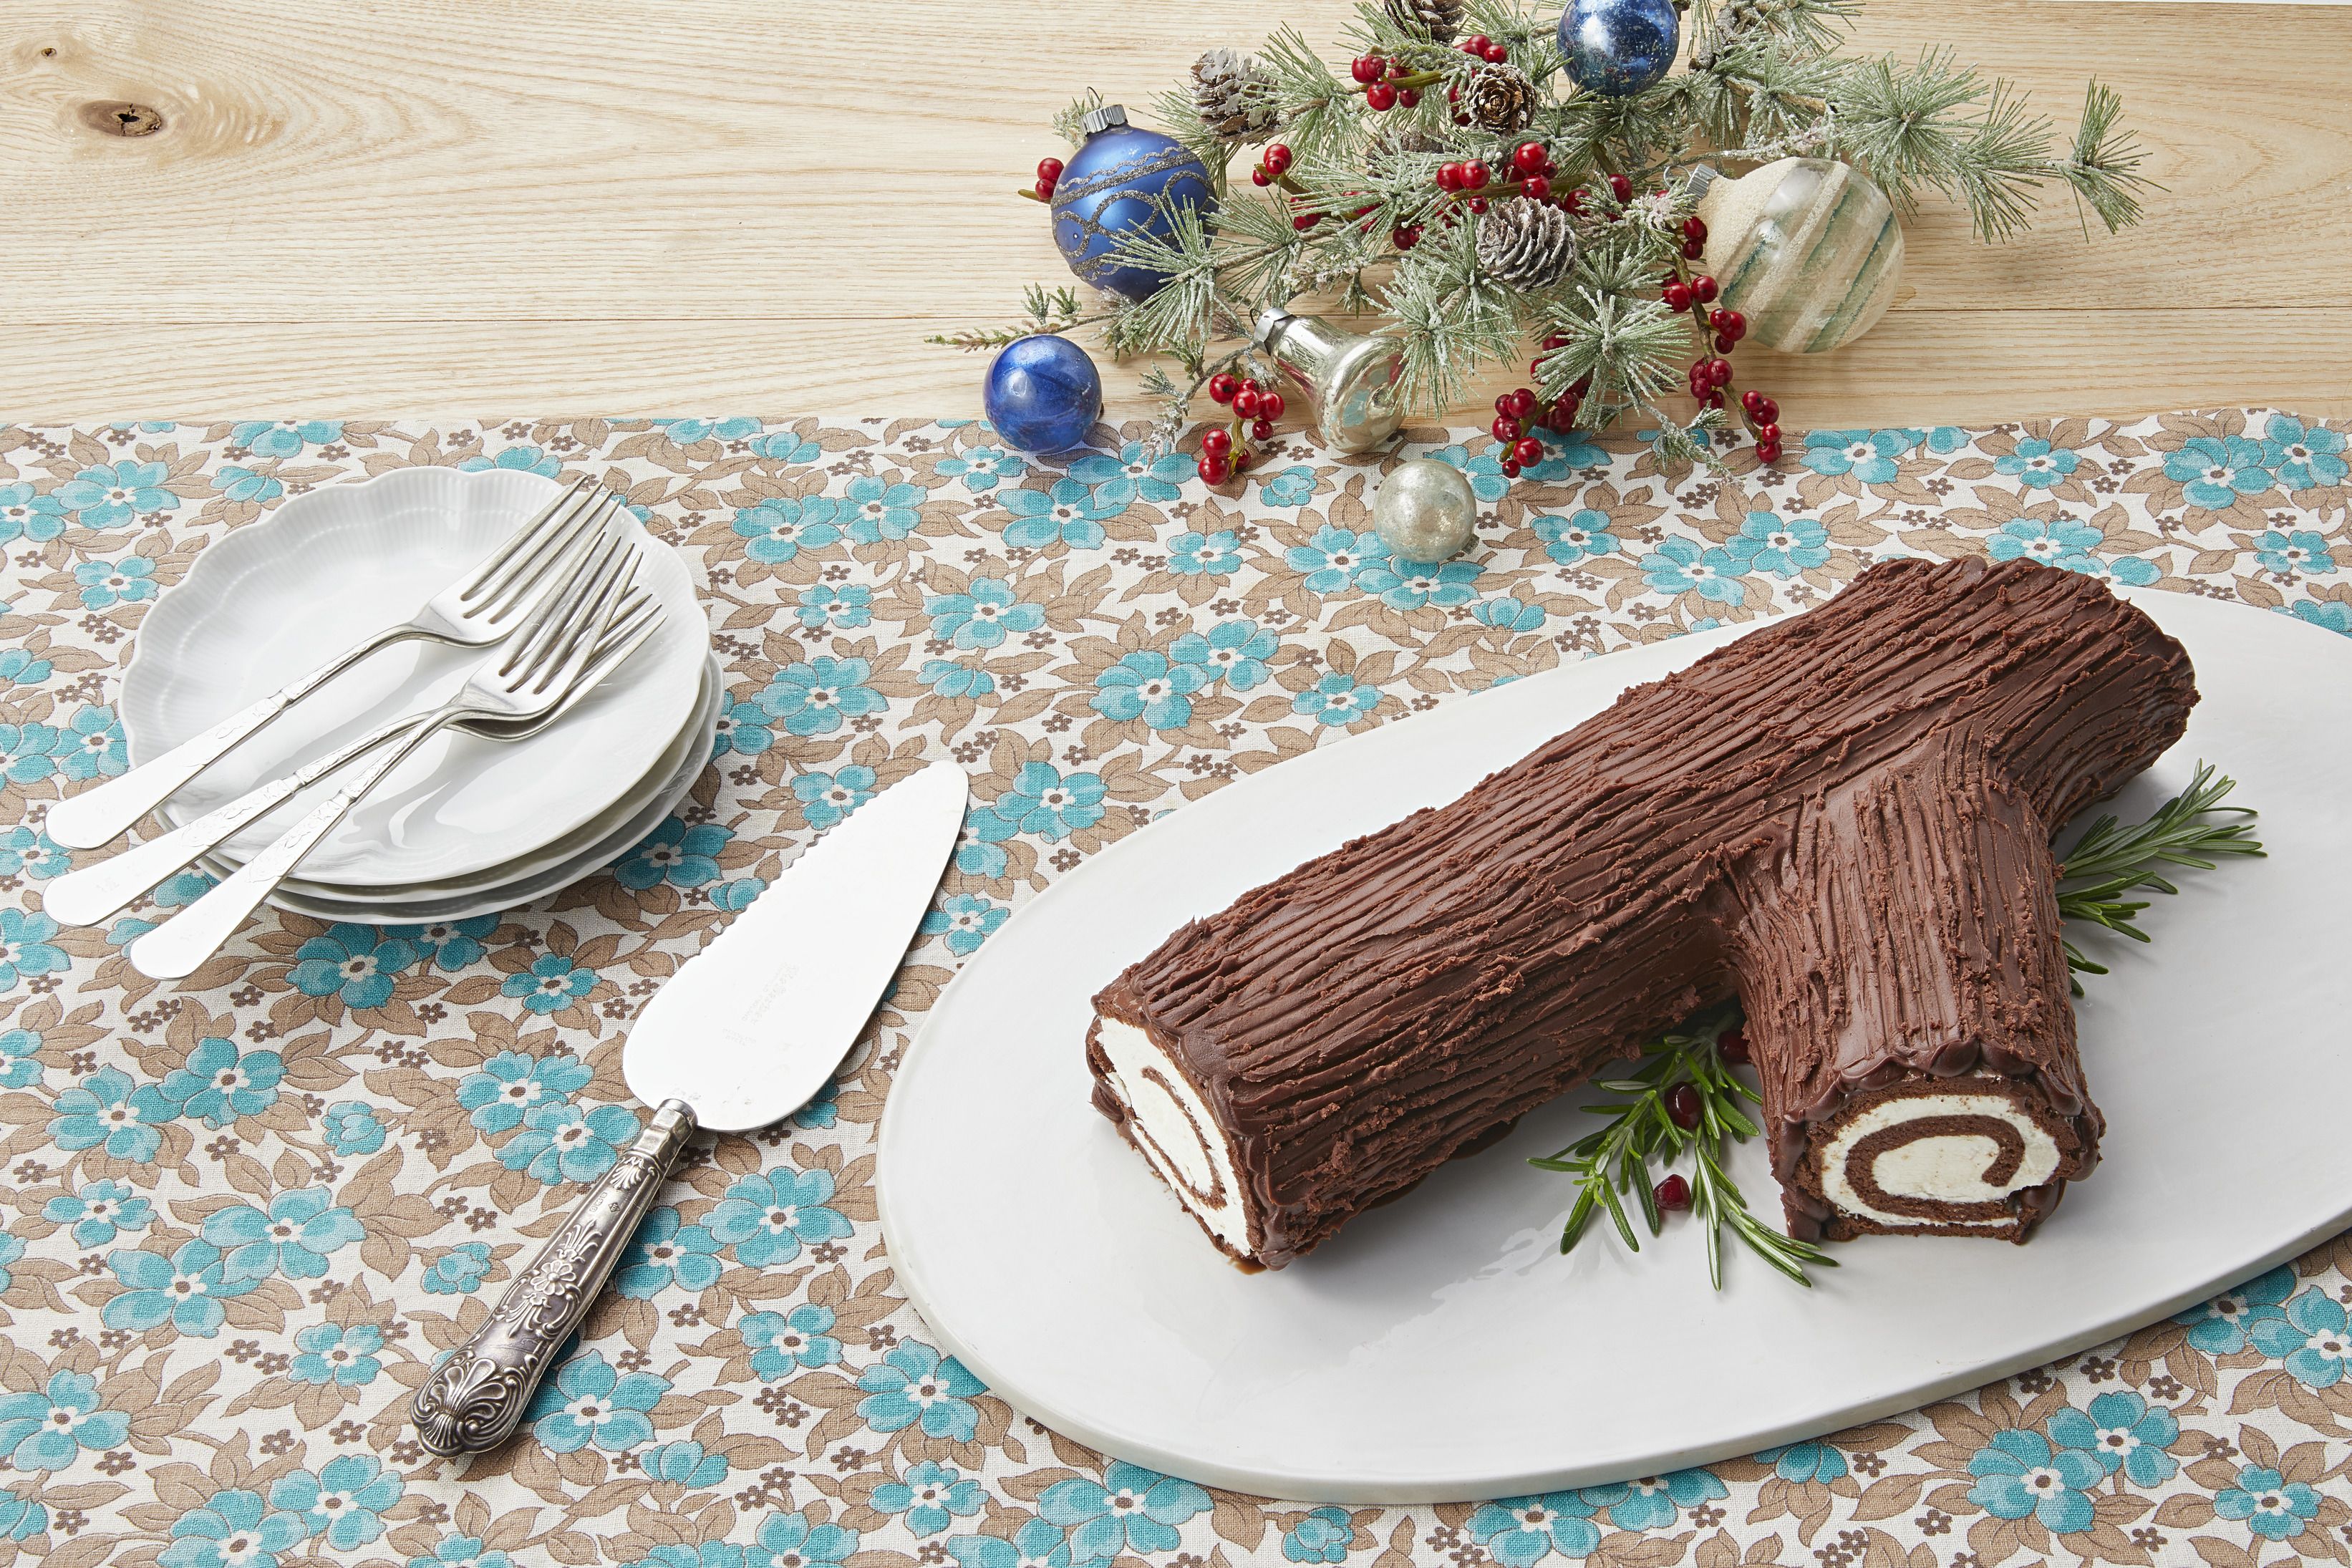 35 Best Christmas Cake Recipes Easy Christmas Cake Ideas